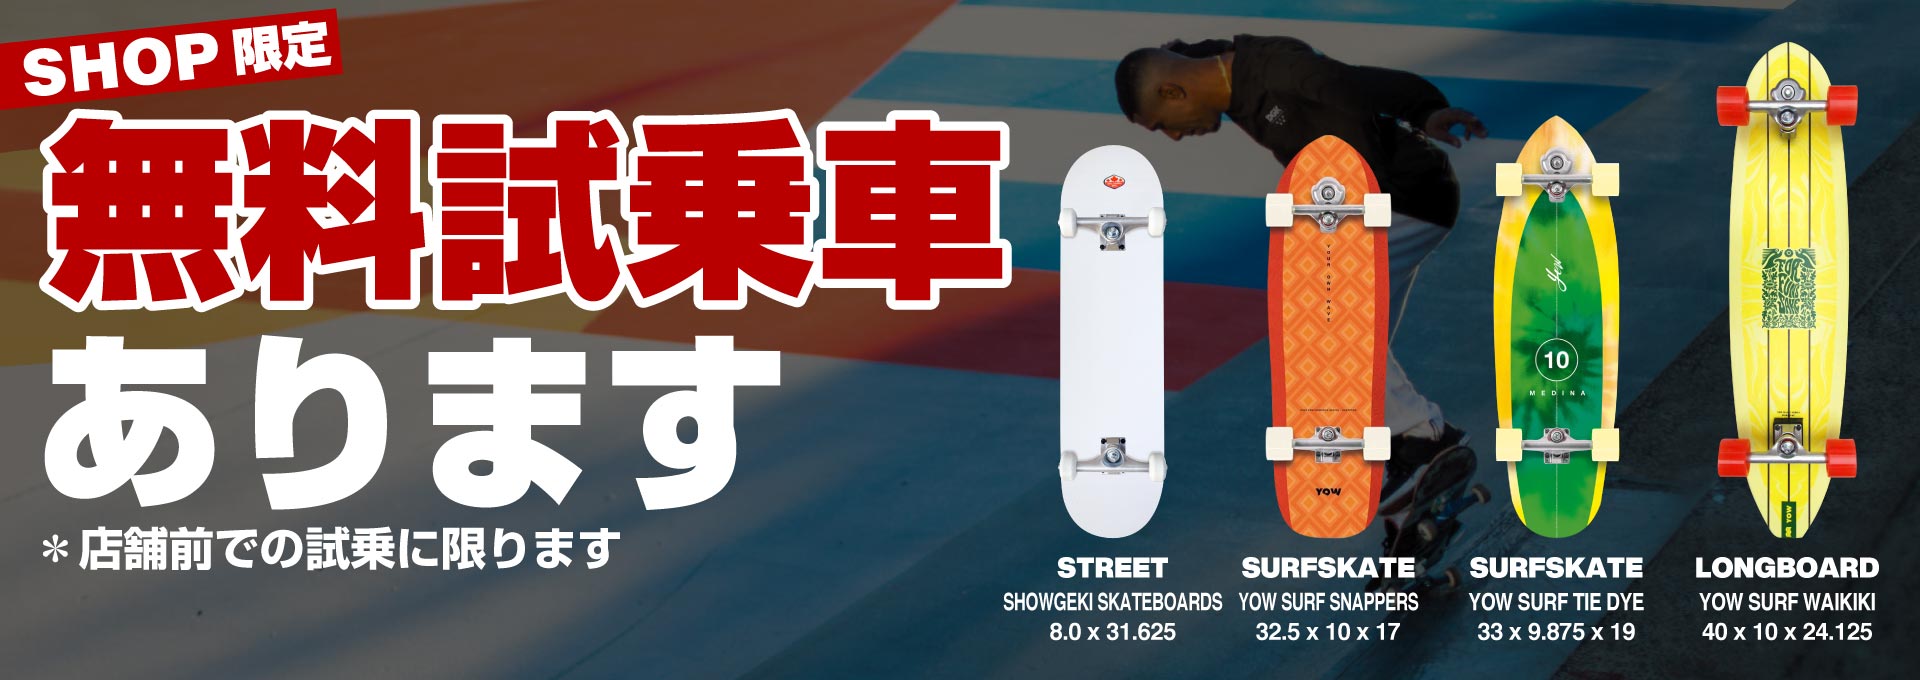 スケートボード(スケボー)&サーフスケート専門店 | Garage